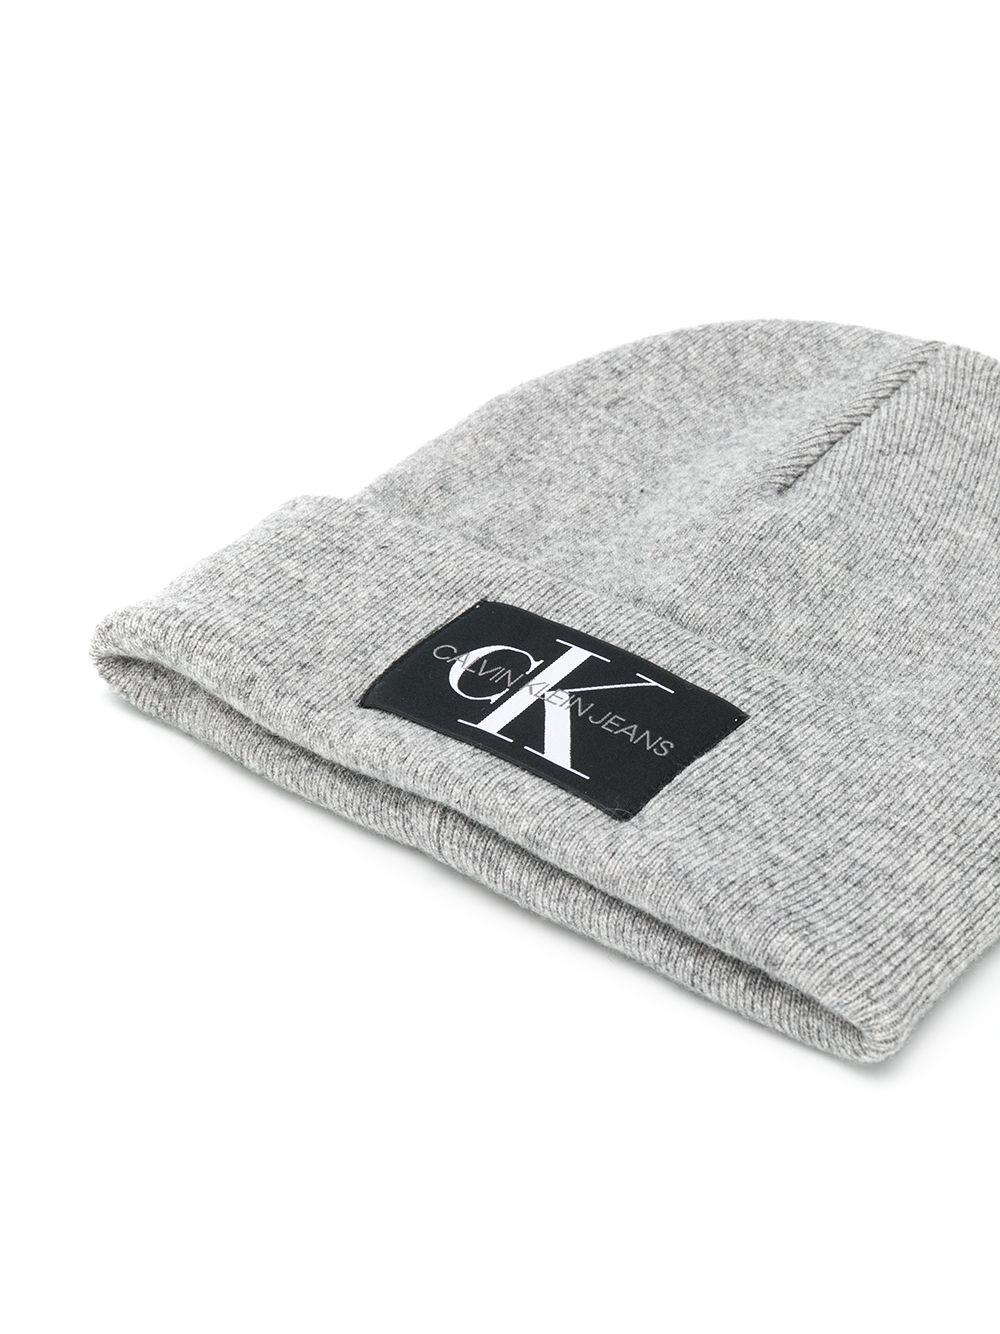 Calvin Klein Wool Logo Patch Beanie in Grey (Gray) for Men - Lyst